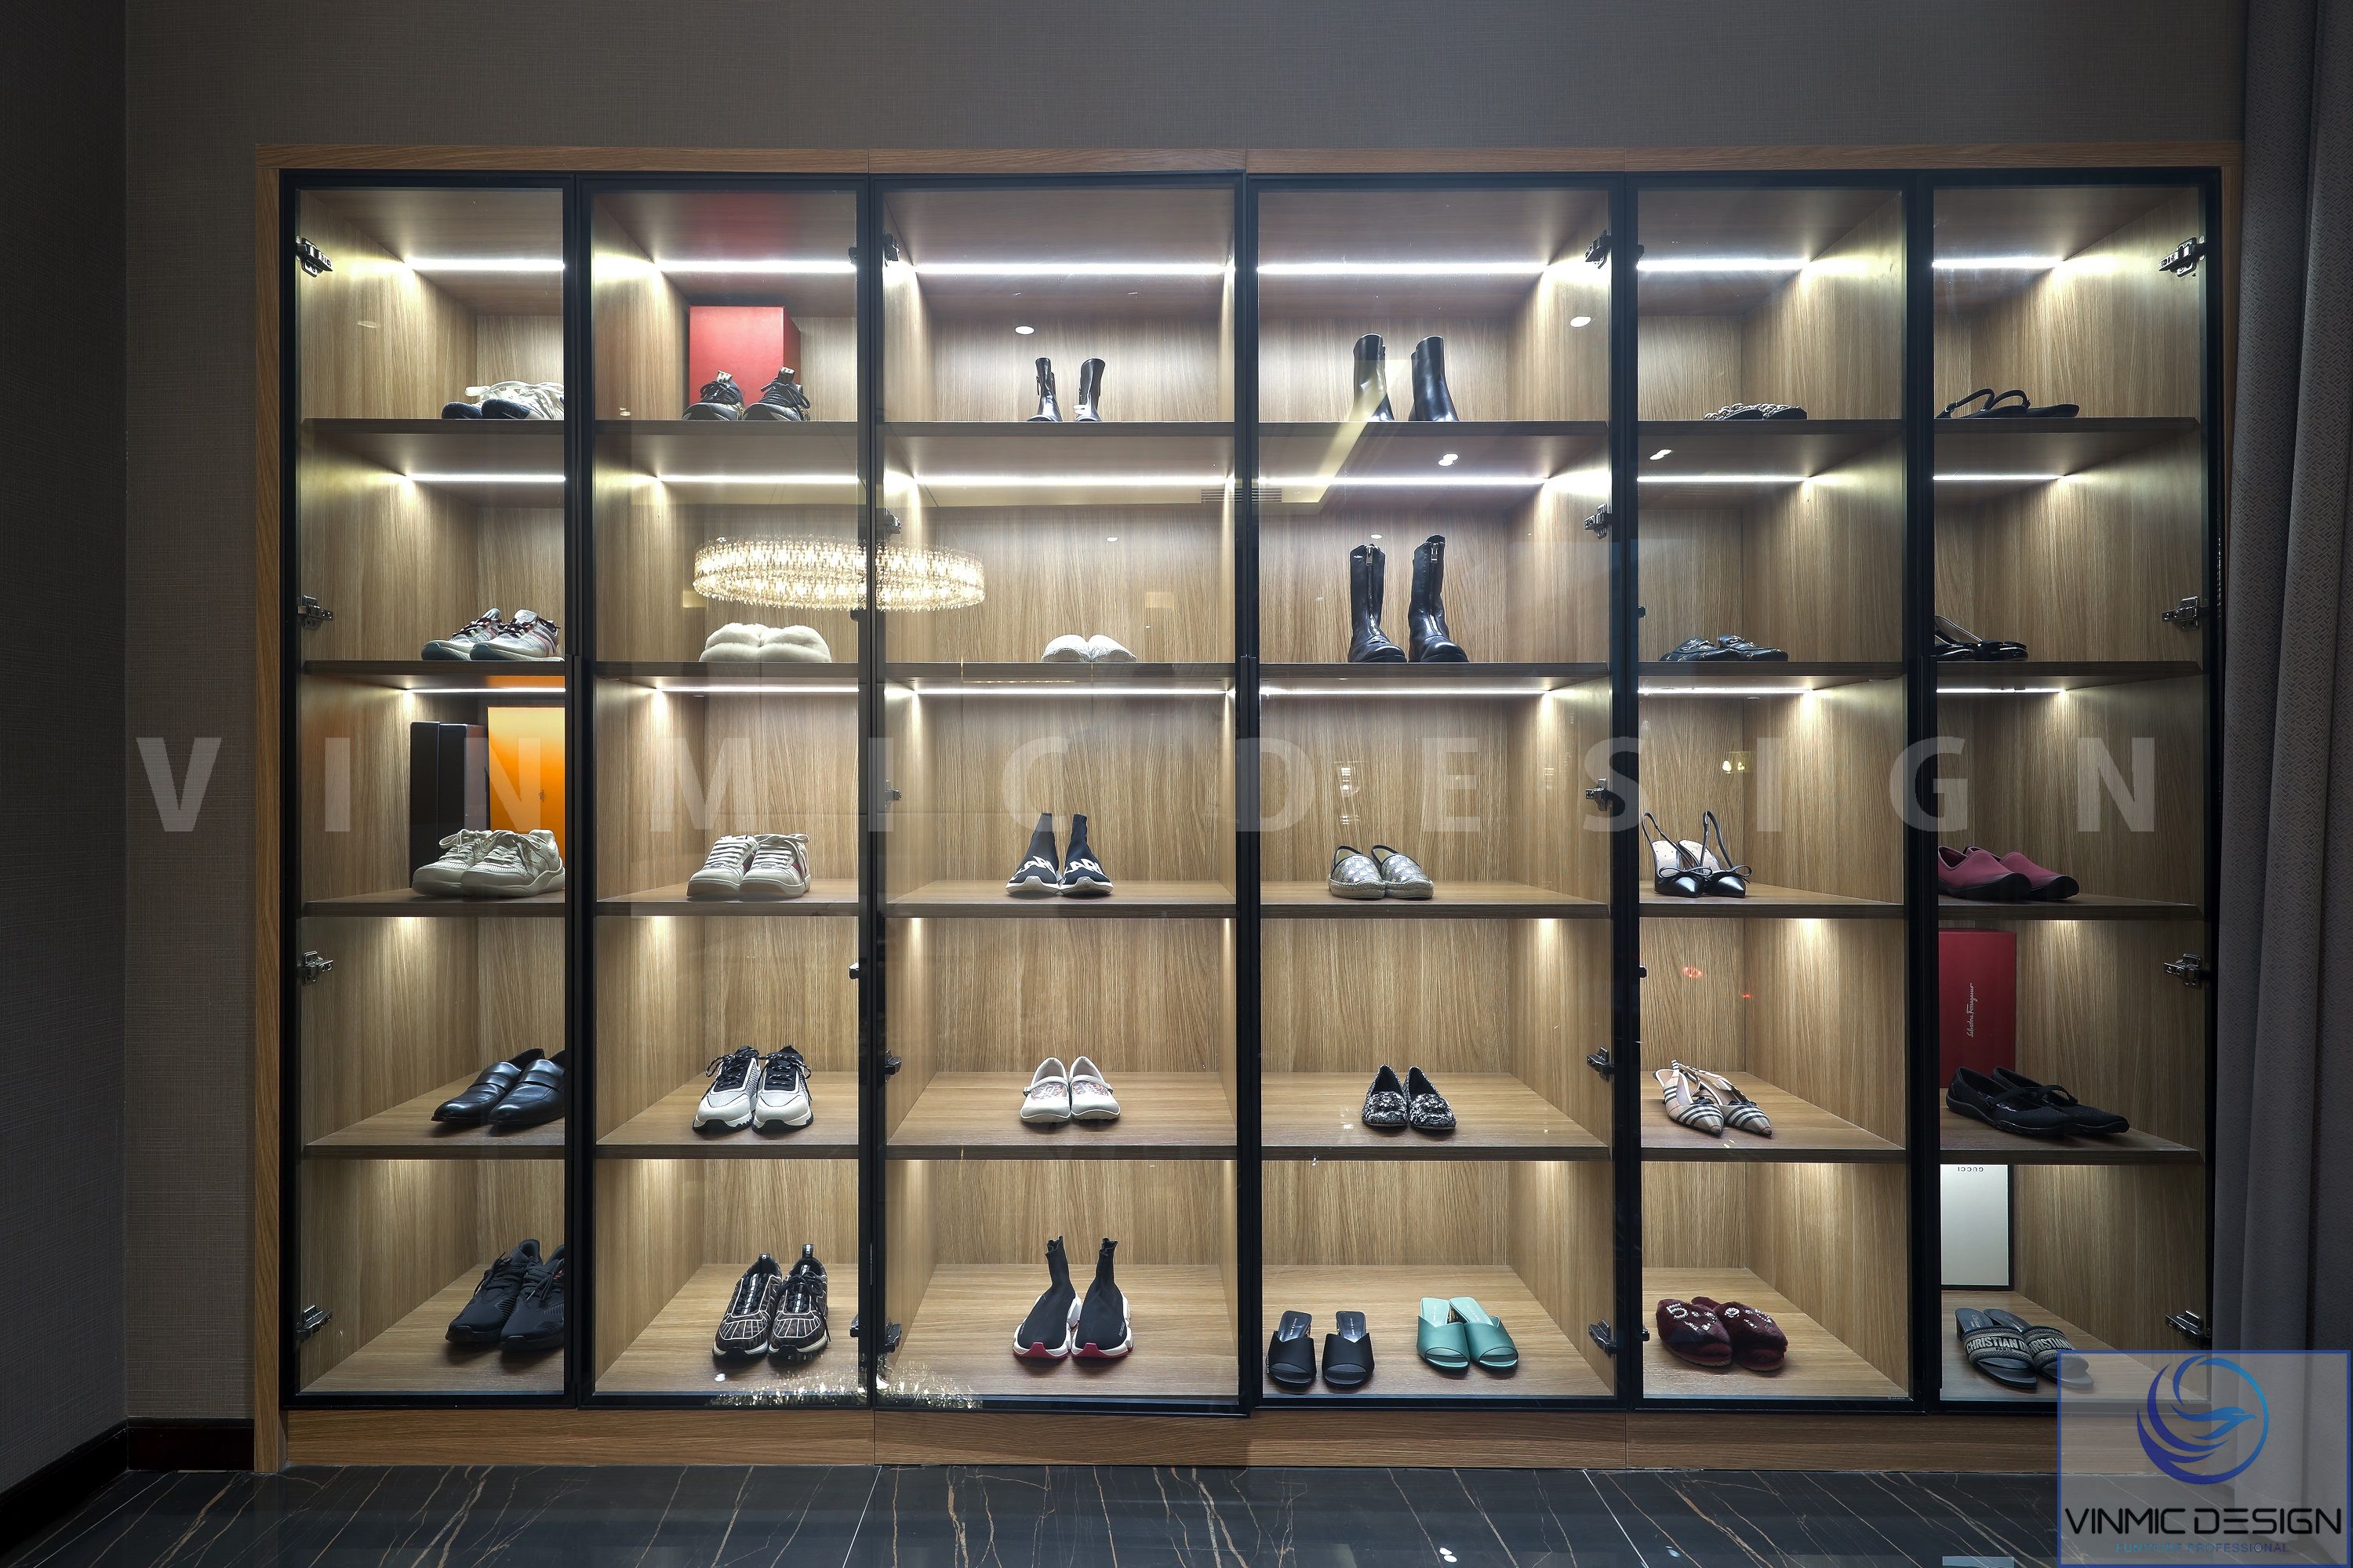 Thi công nội thất tủ giày hiện đại với hệ đèn led tôn lên những đôi giày của gia chủ